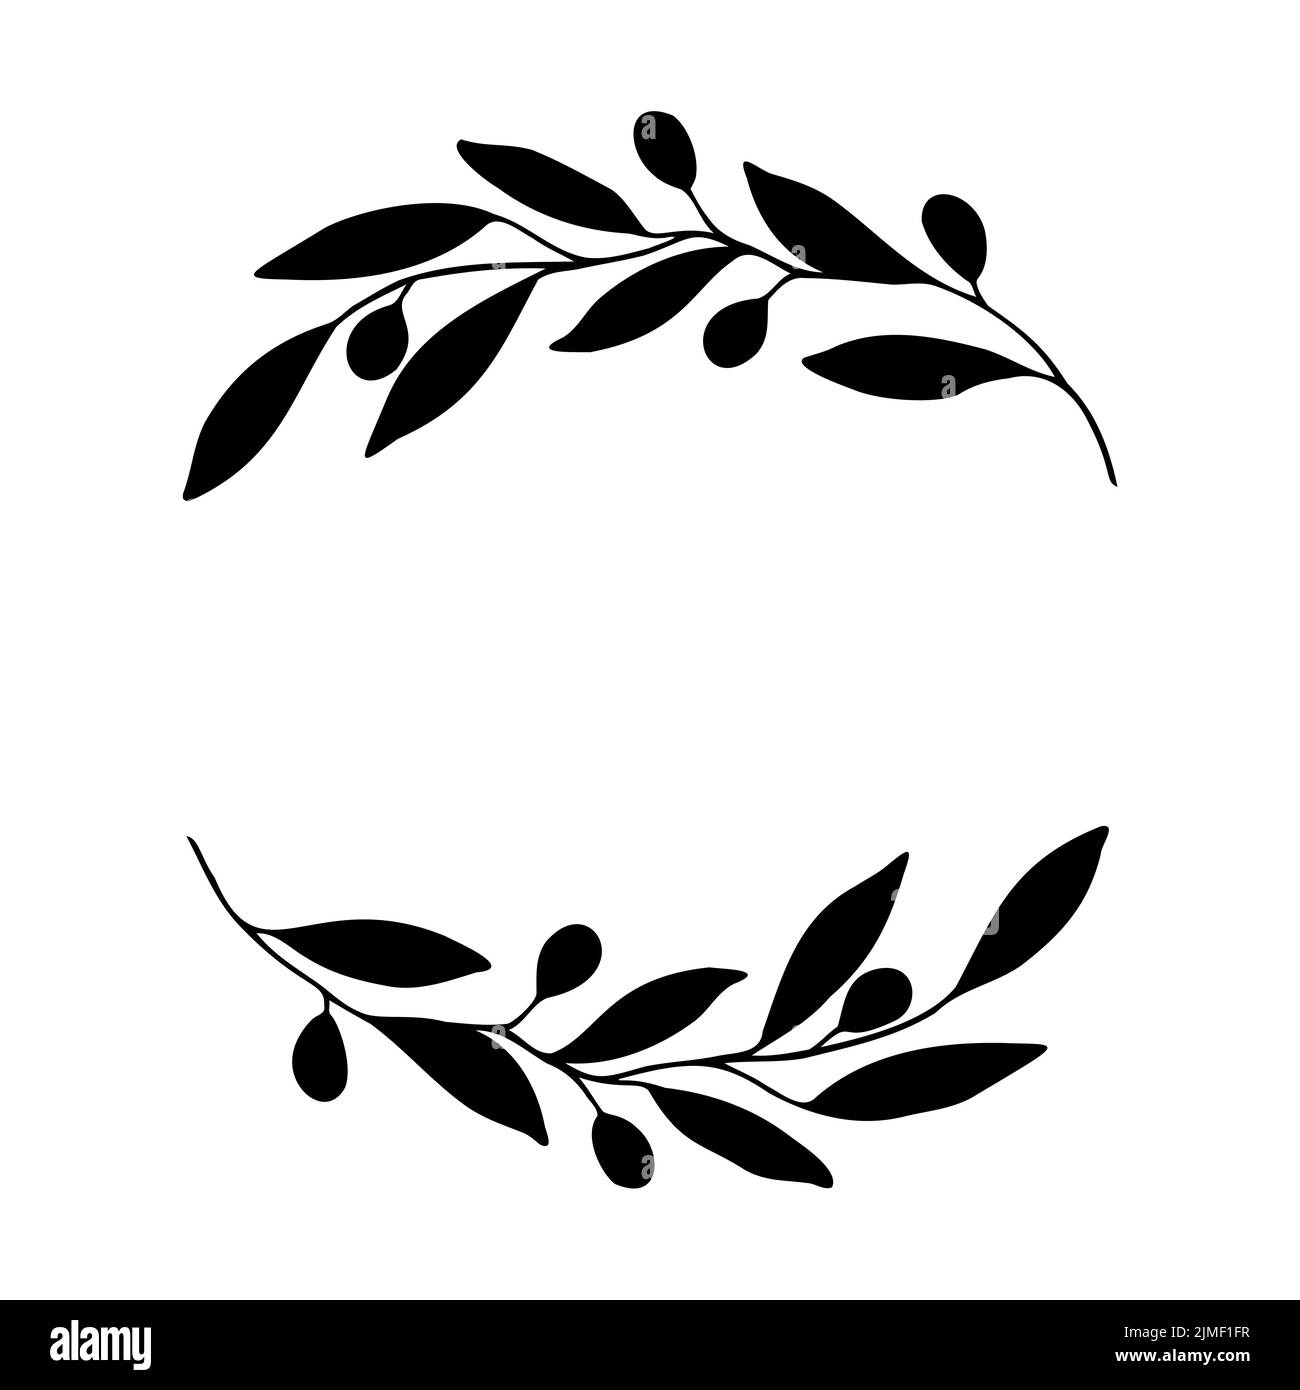 Olive Kranz skizziert Blumenrahmen.Vektor-Vorlagen für Einladungskarten, Save the Date rustikale handgezeichnete Illustration Stock Vektor